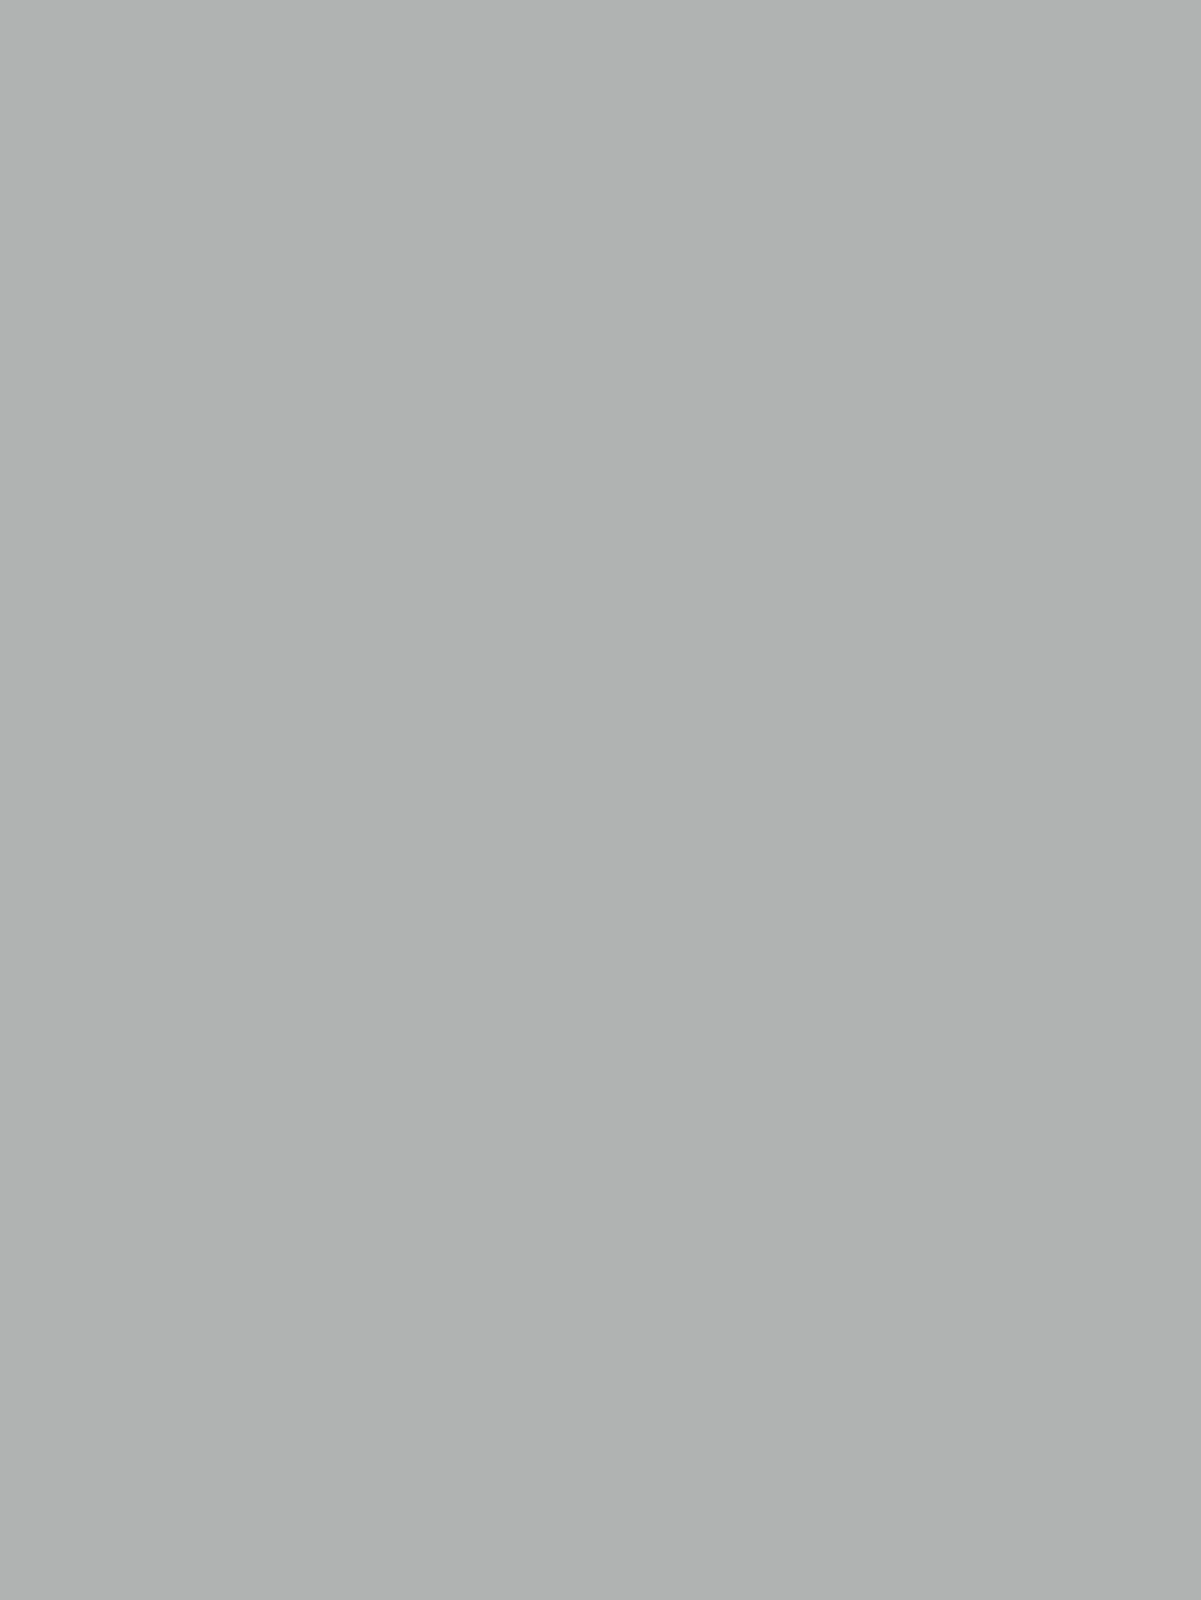 Флакон для одеколона «Северный». 1980. Фотография: Государственный Владимиро-Суздальский историко-архитектурный и художественный музей-заповедник, Владимир